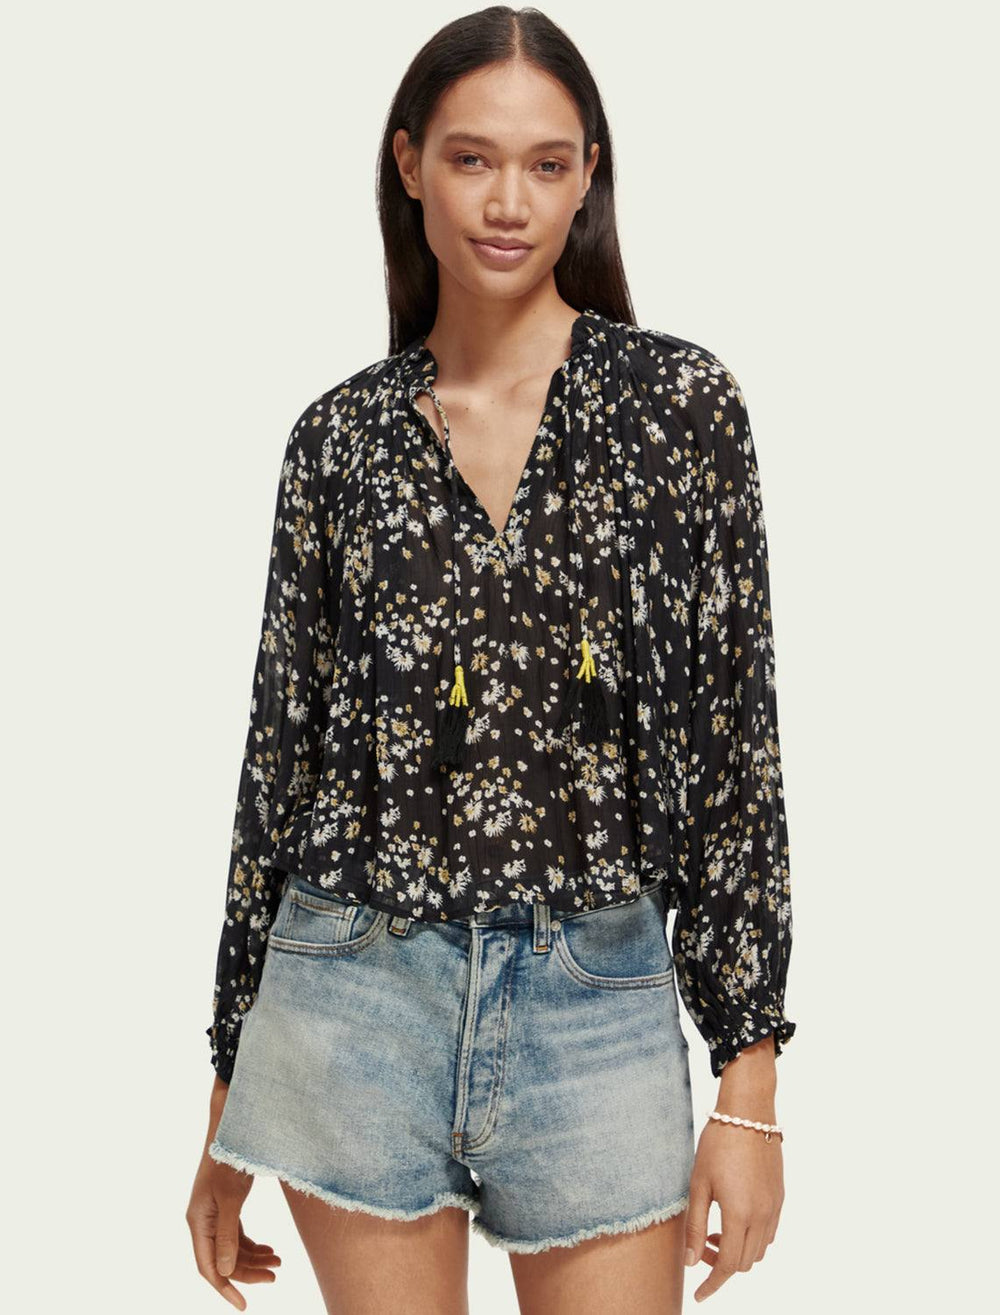 Model wearing Scotch & Soda's dandelion print contrast ruffle blouse in black.